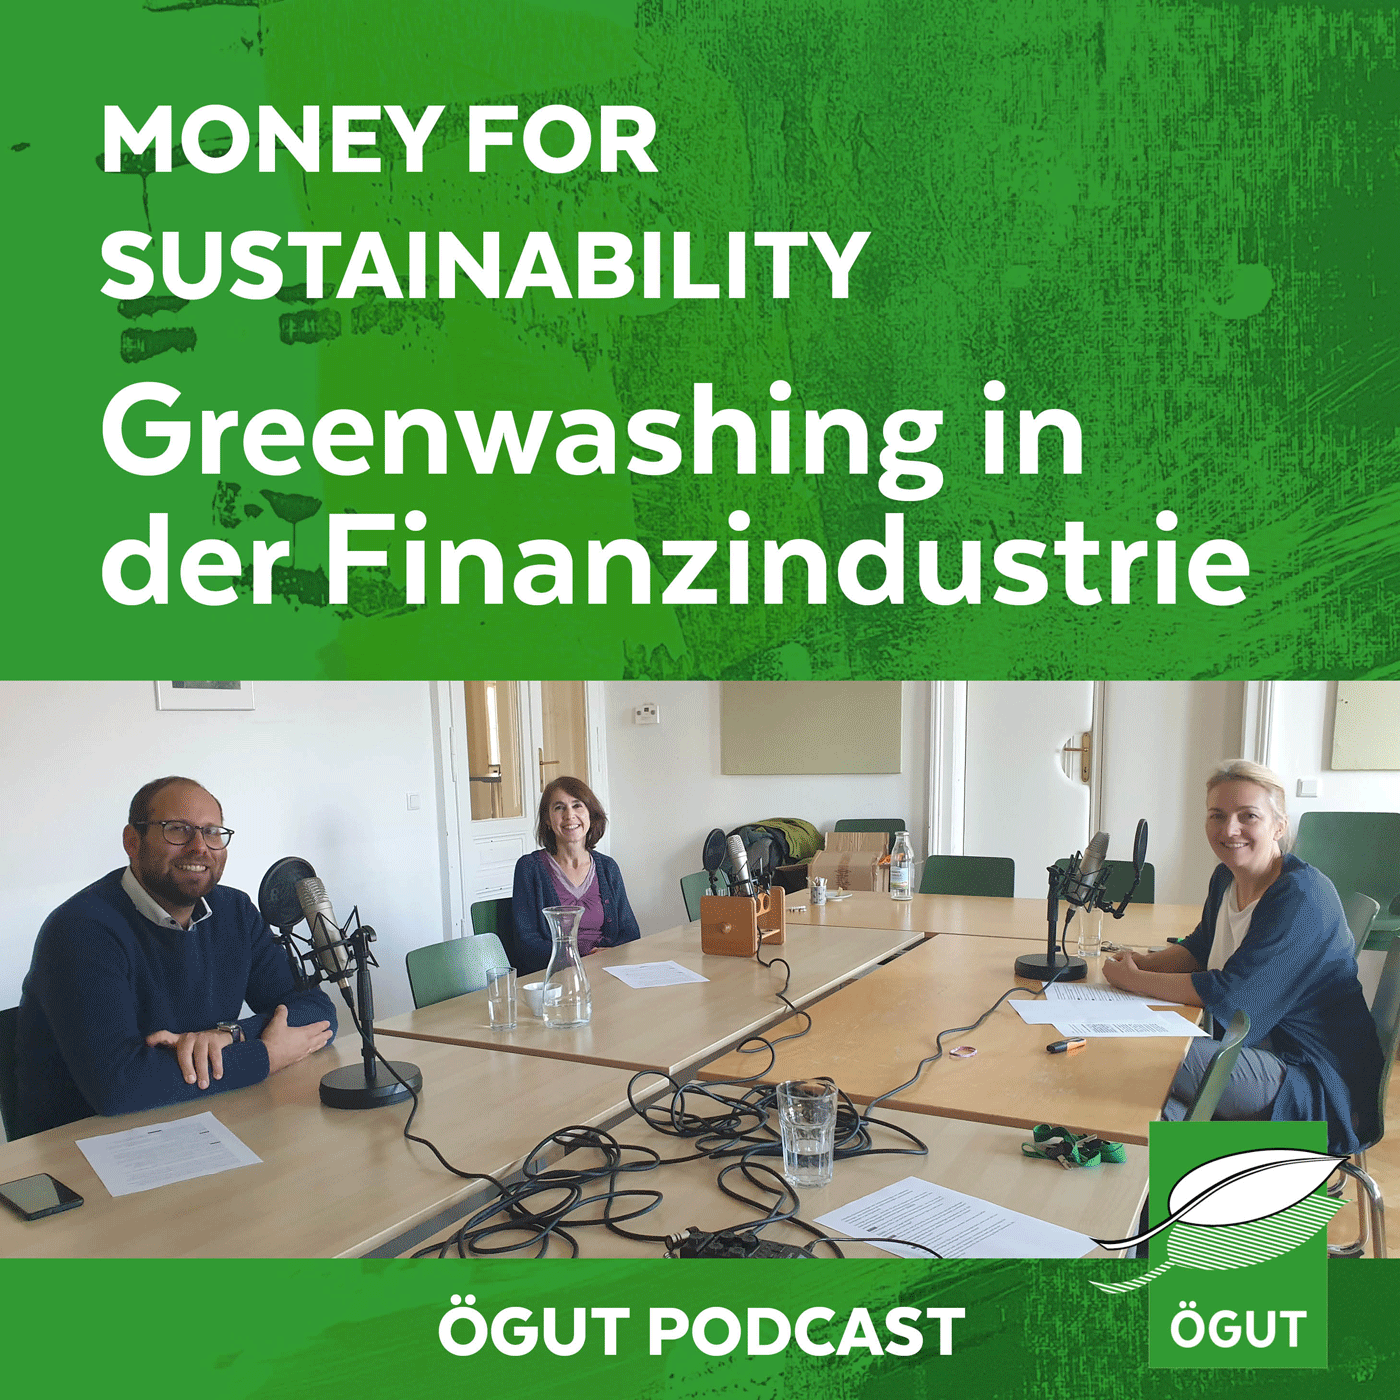 Greenwashing in der Finanzindustrie